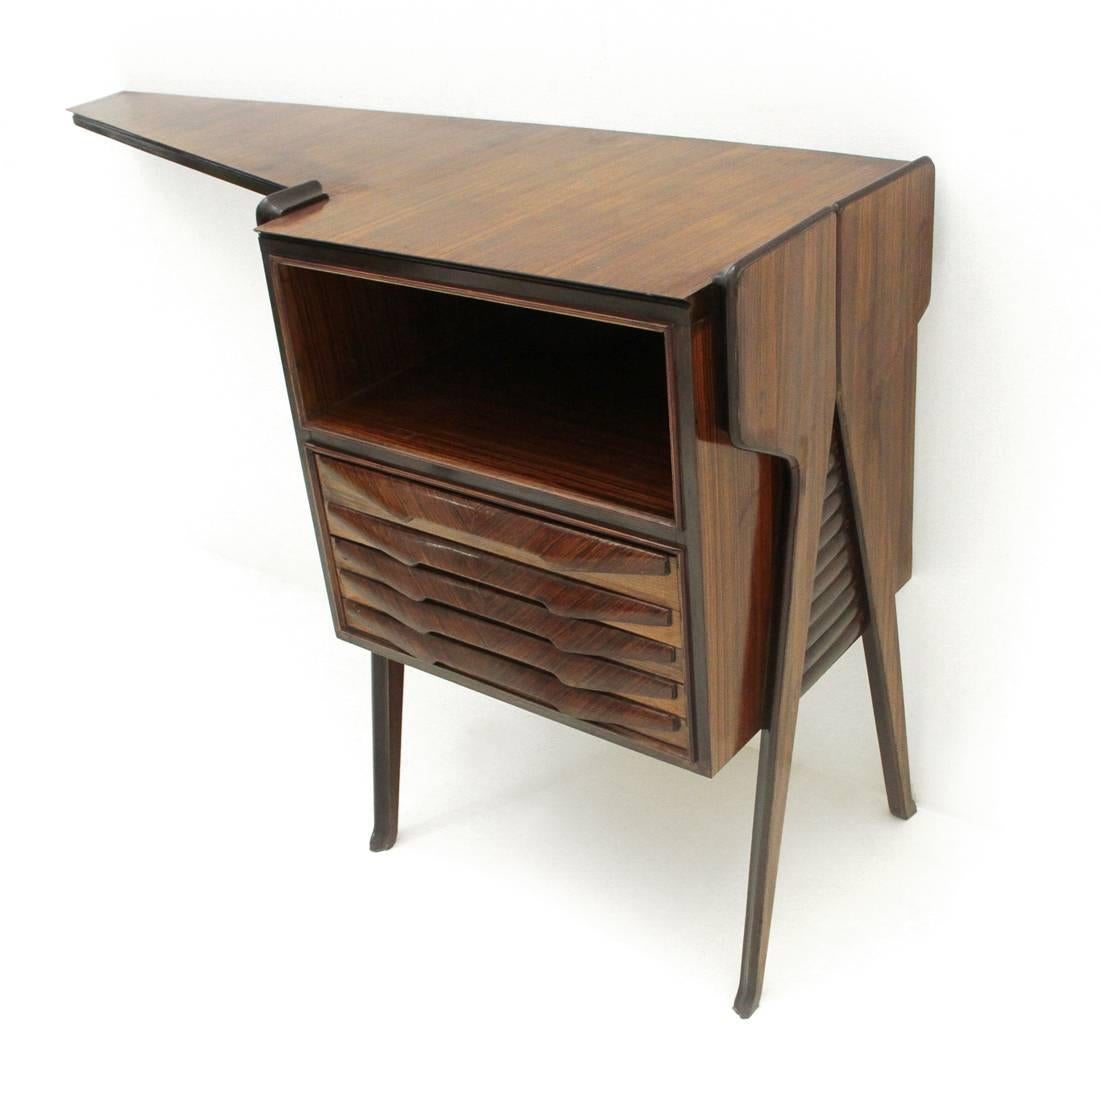 Mid-20th Century Italian Midcentury Wooden Console Desk, 1950s